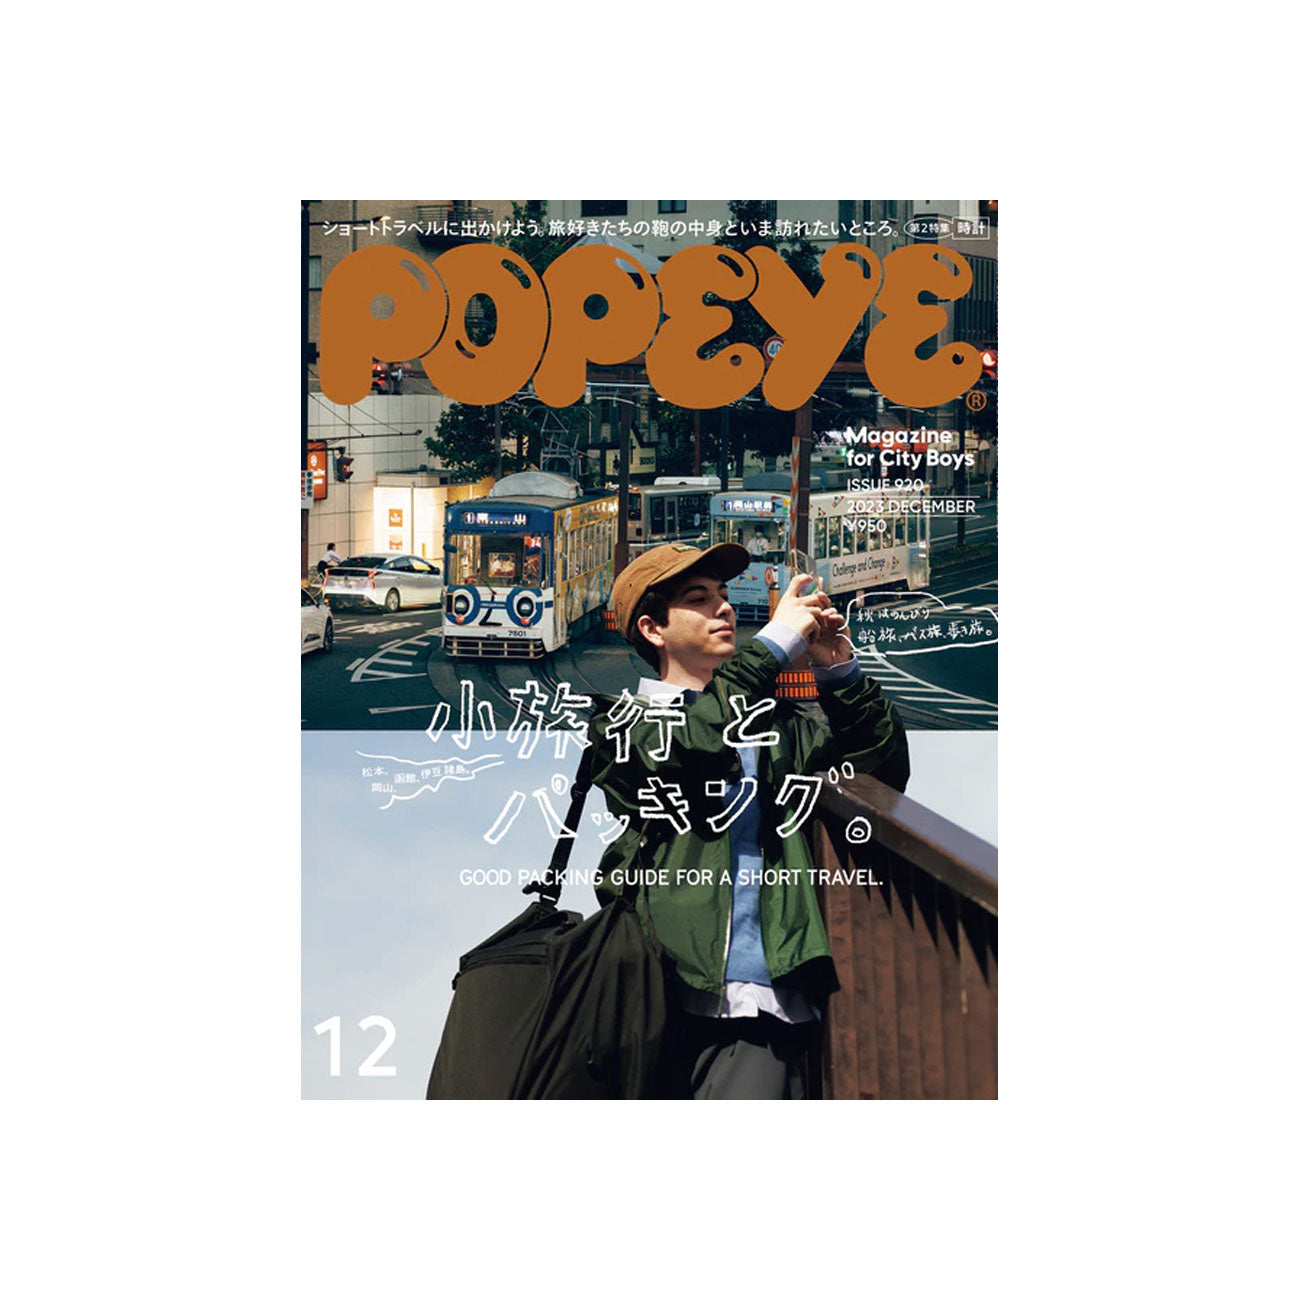 popeye magazine issue 920